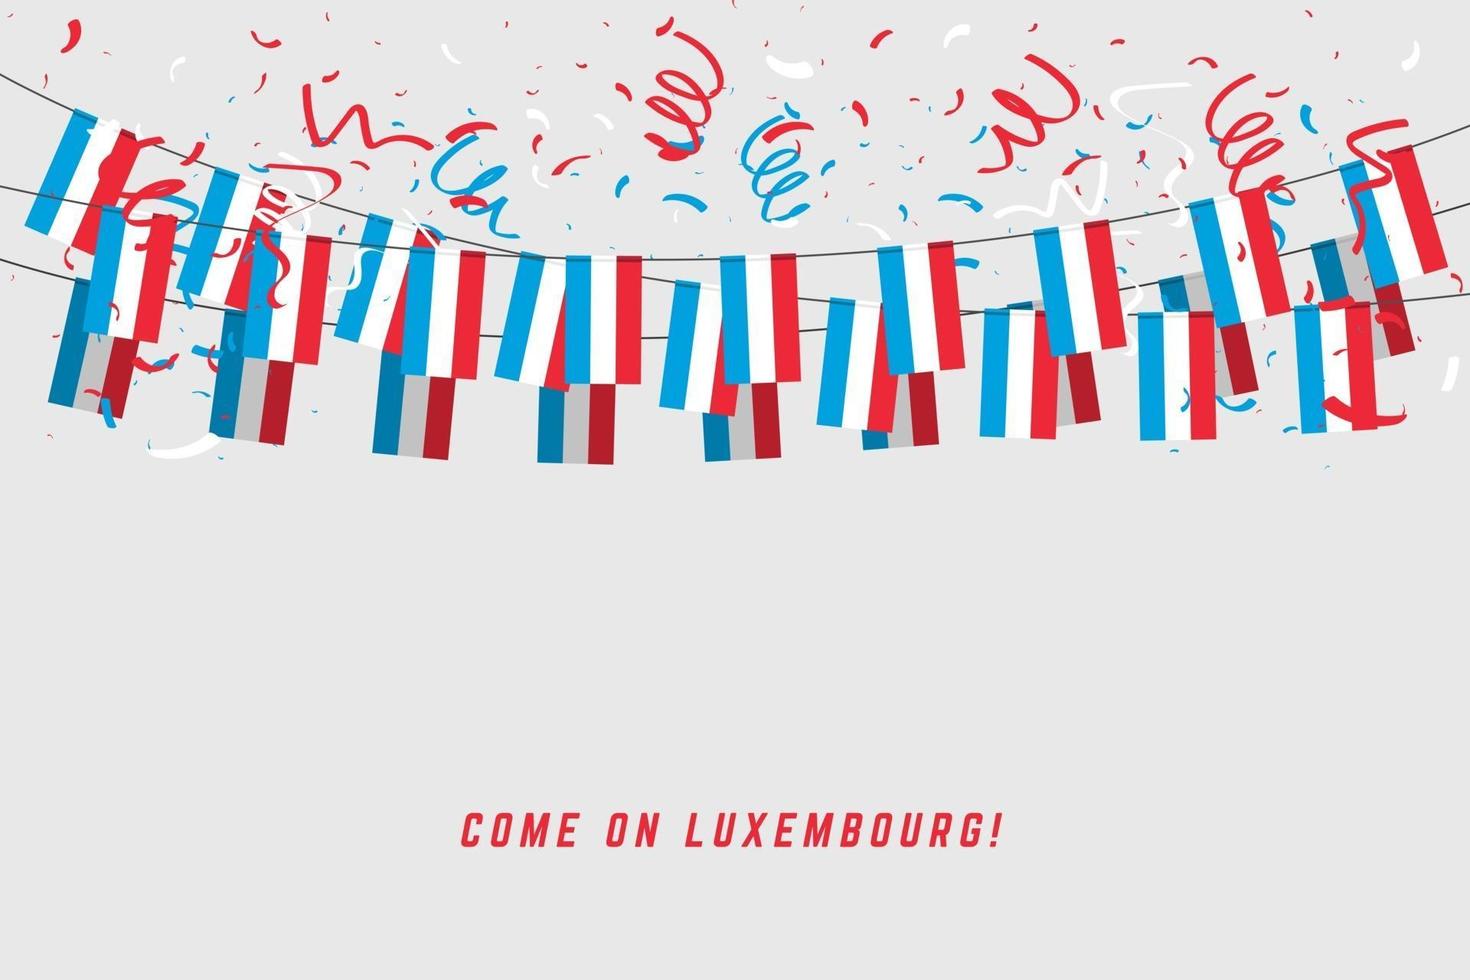 luxemburgse slingervlag met confetti op witte achtergrond, hang bunting voor luxemburgse vieringssjabloonbanner. vector